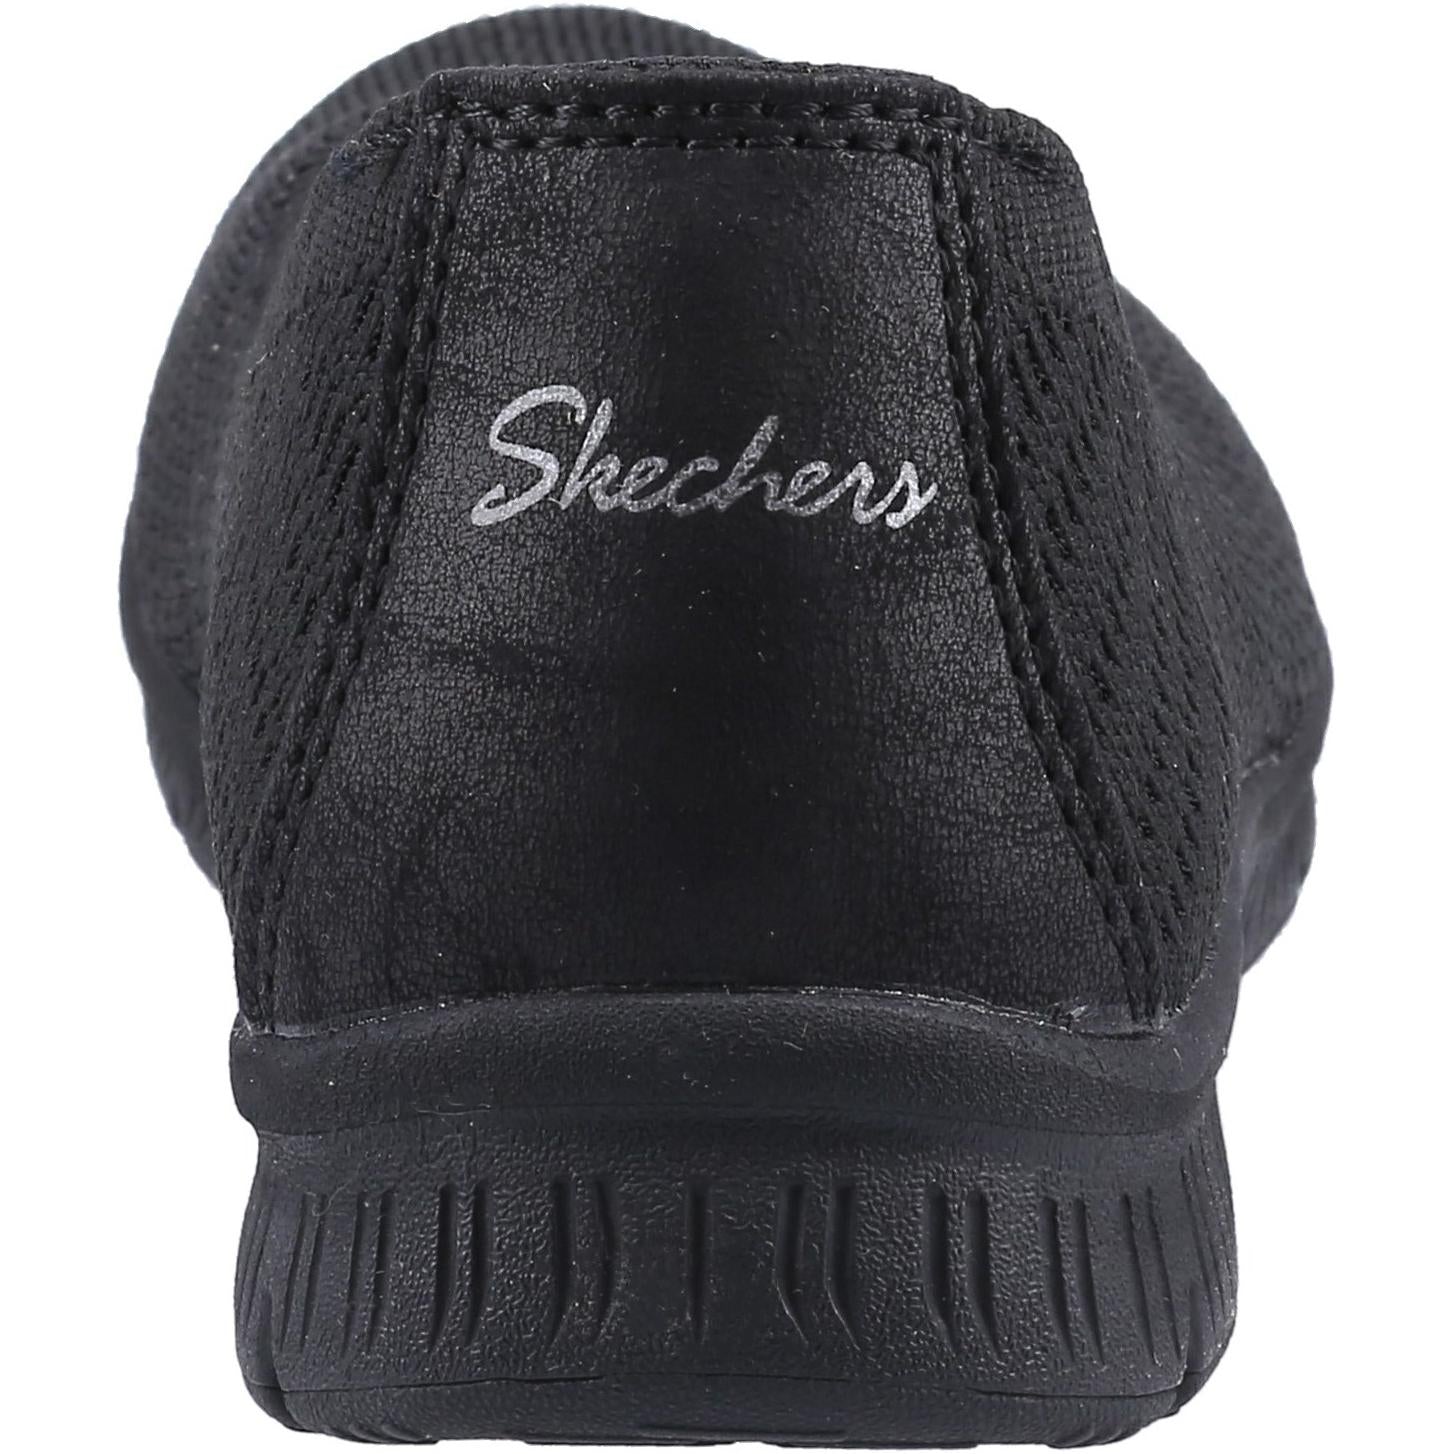 Skechers Be-Cool Wonderstruck Shoe